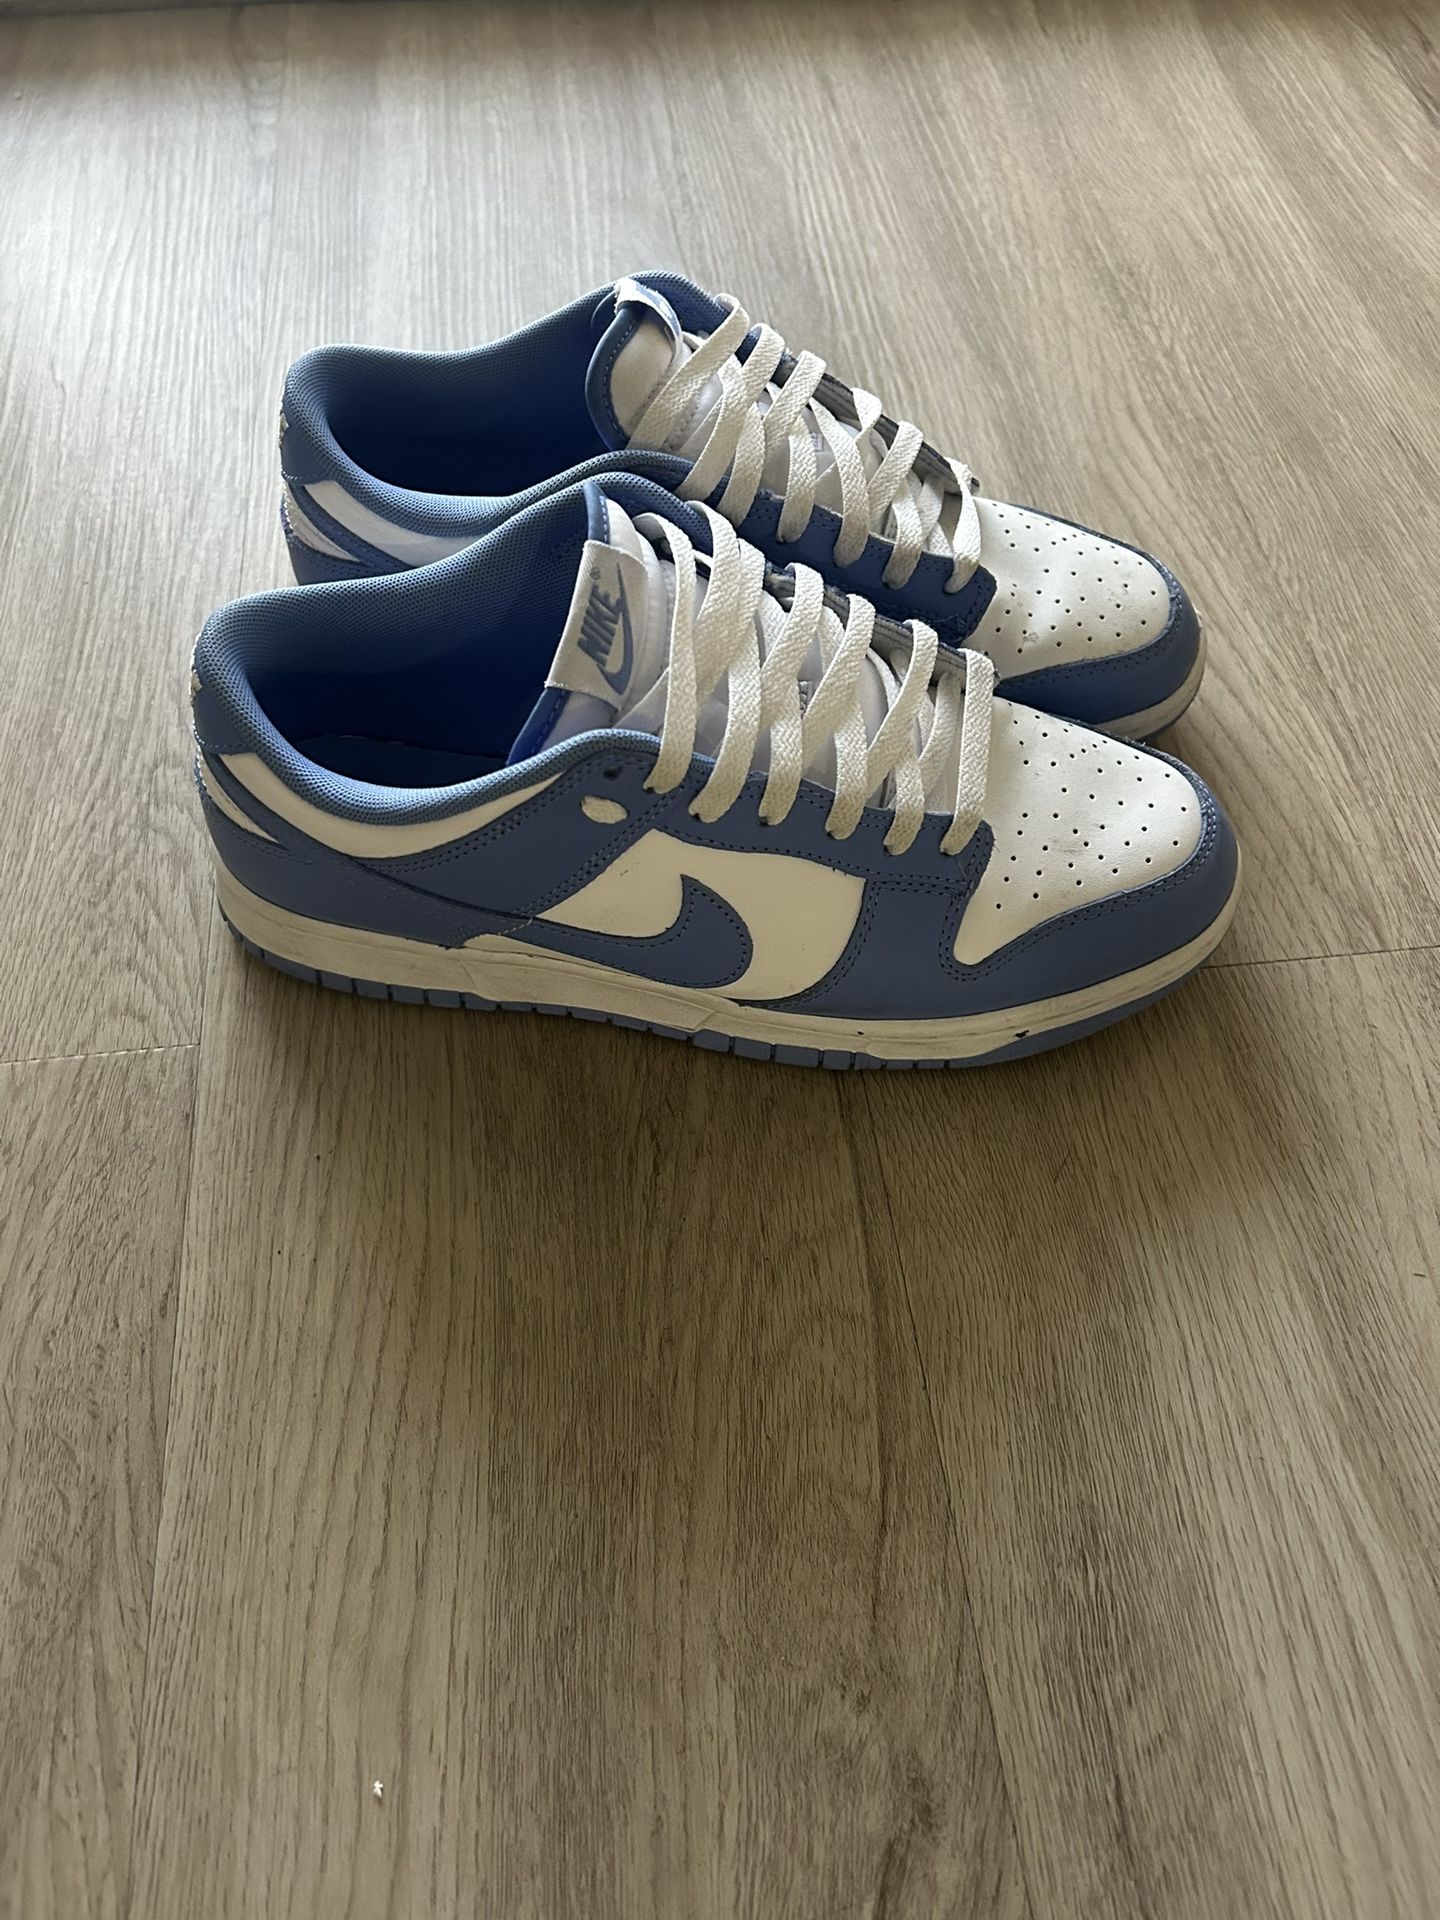 Nike Dunks Polar Blue (WITH BOX) 9.5